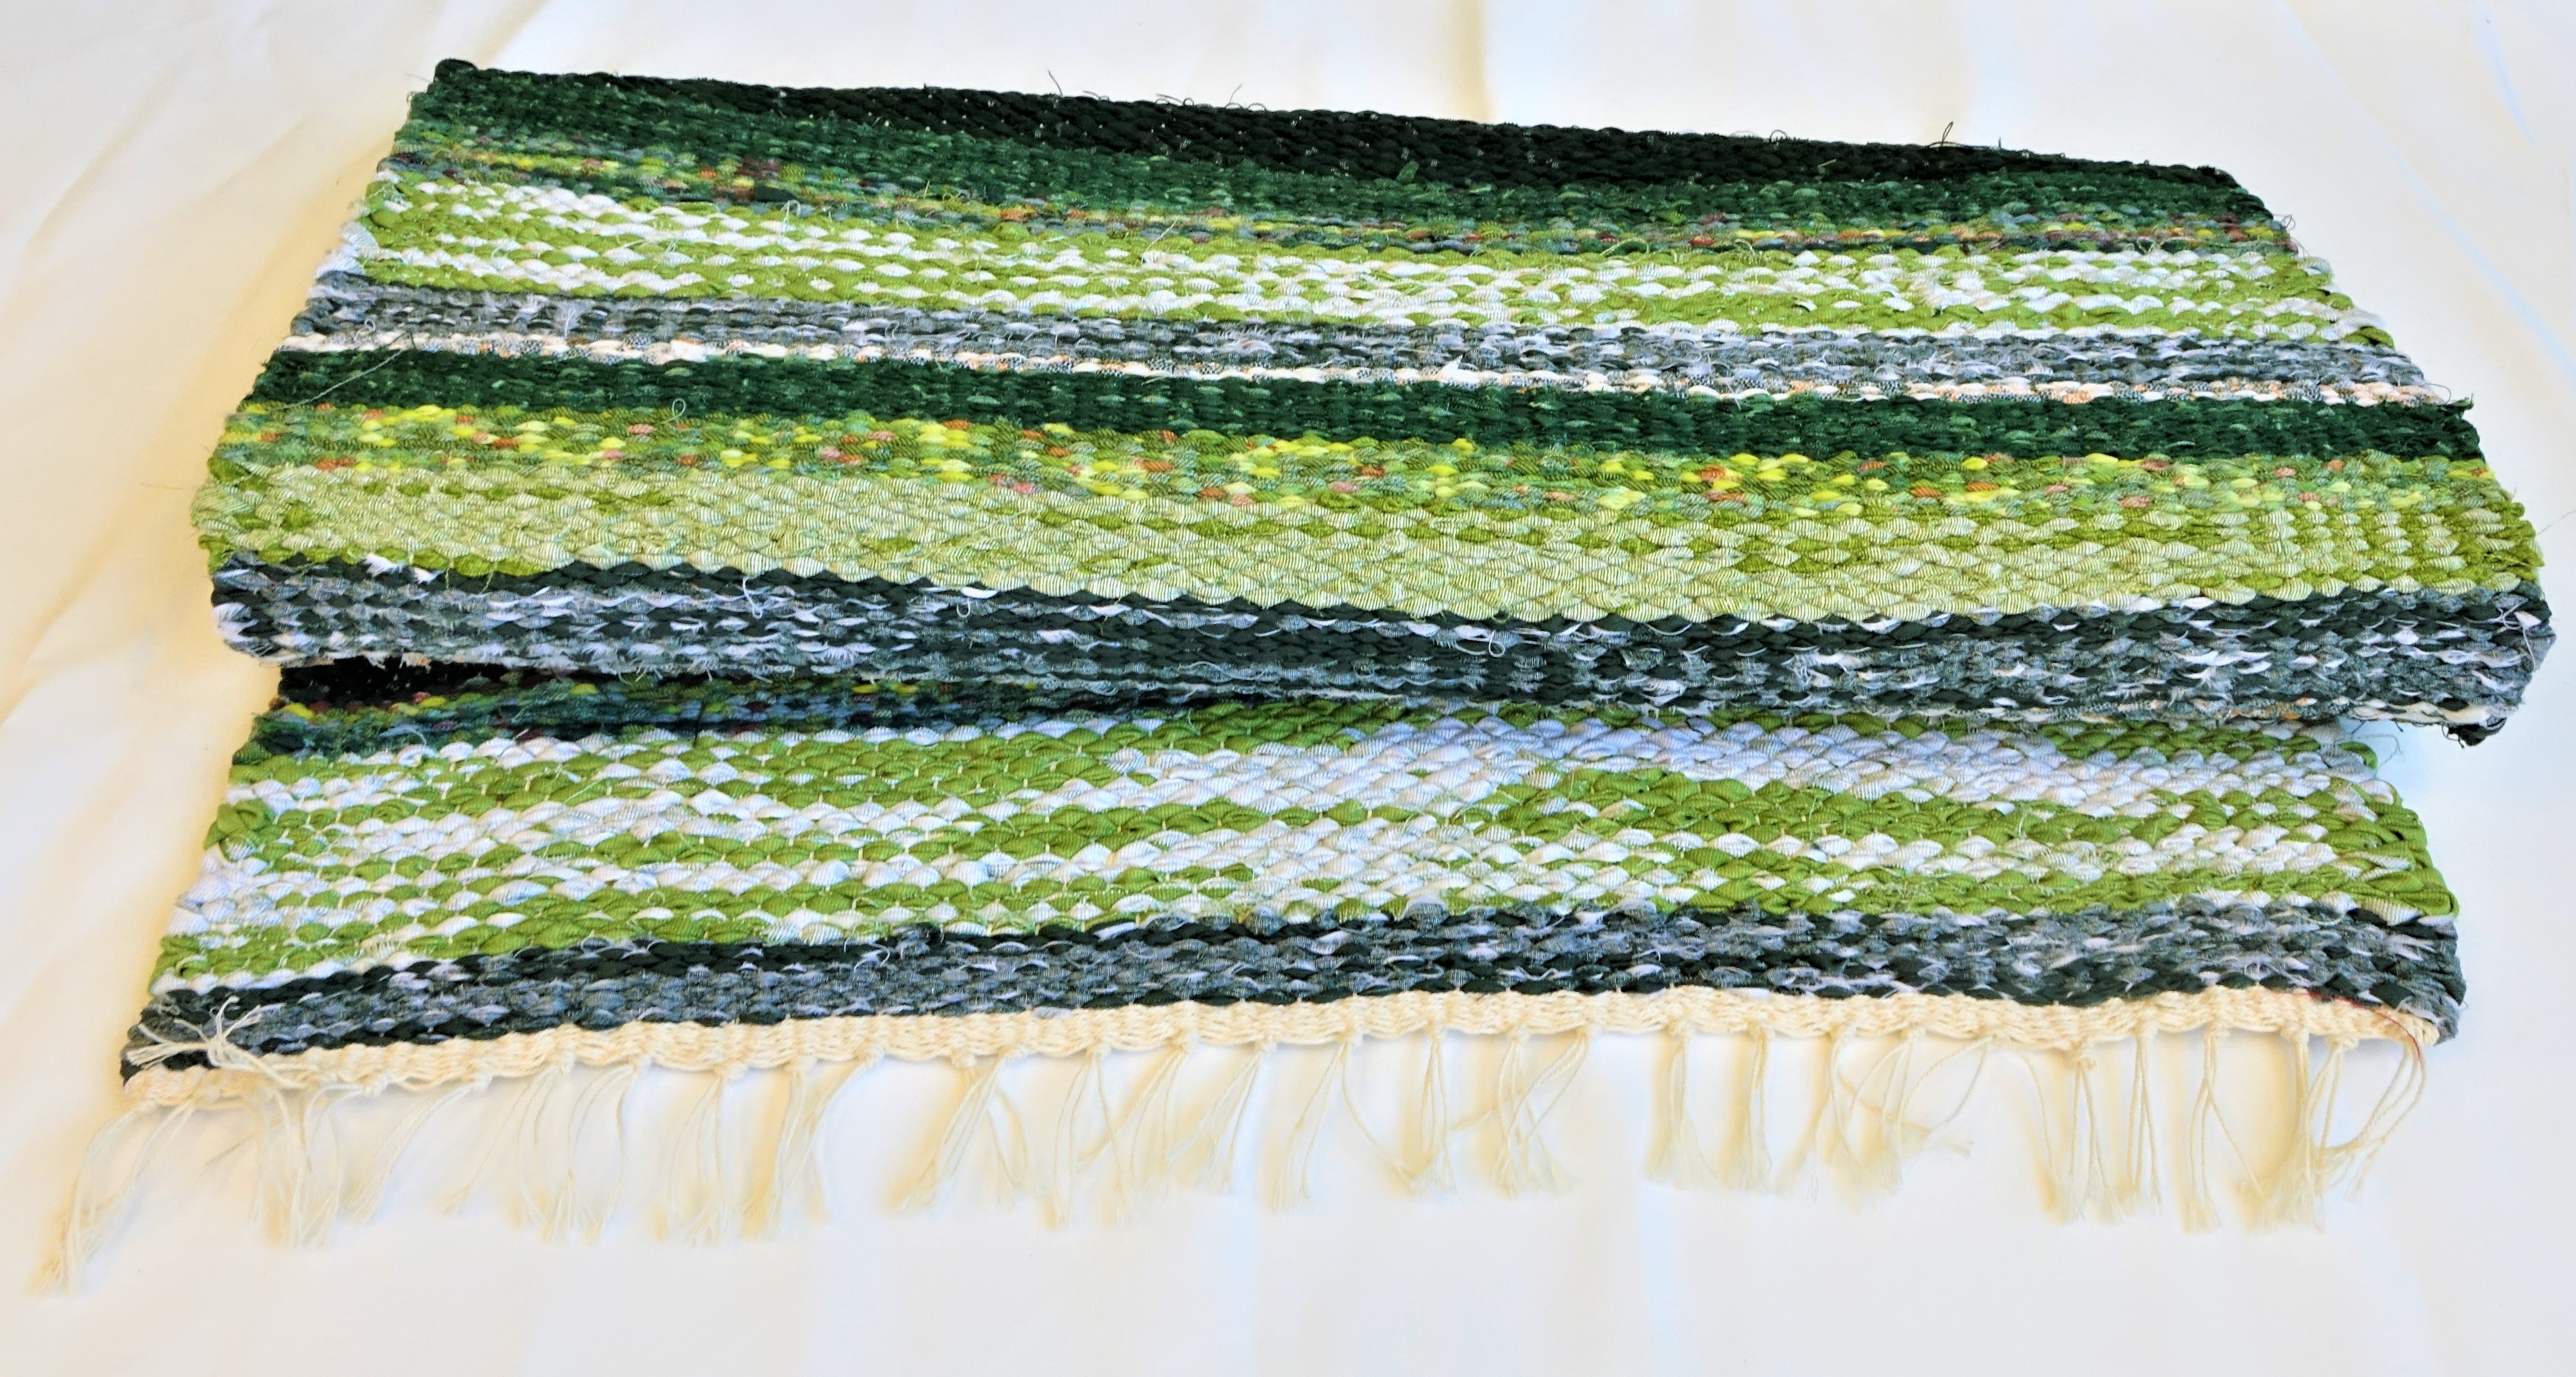 A képen egy körülbelül 1 méter hosszú és 70 centiméter széles, szőtt rongyszőnyeg látható. A szőnyeget keresztben többféle árnyalatú zöld, sárga, krémszínű, fehér és fekete csíkok mintázzák.